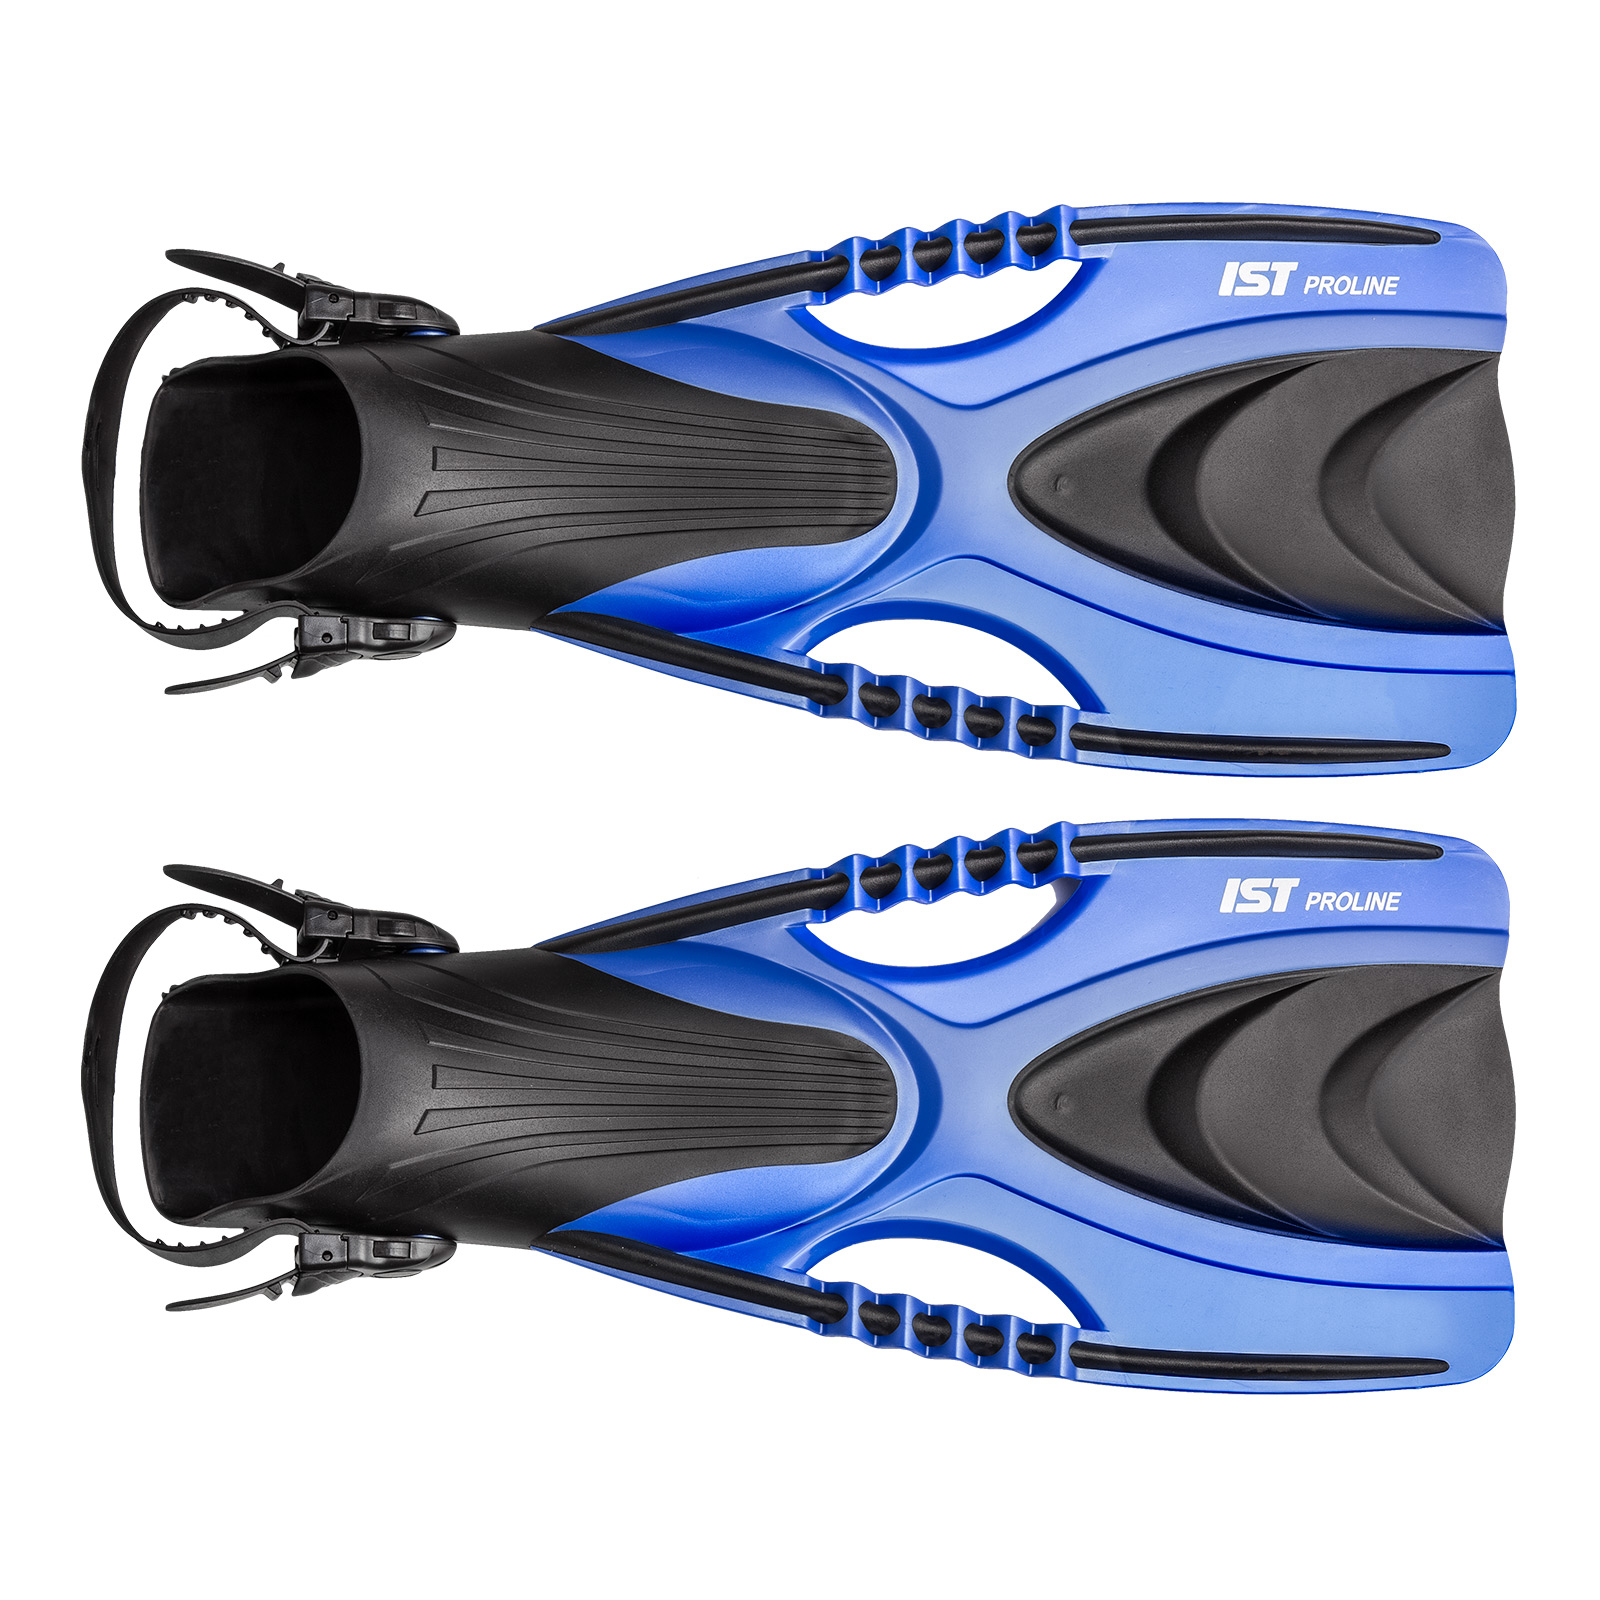 Speedy Snorkeling Fins